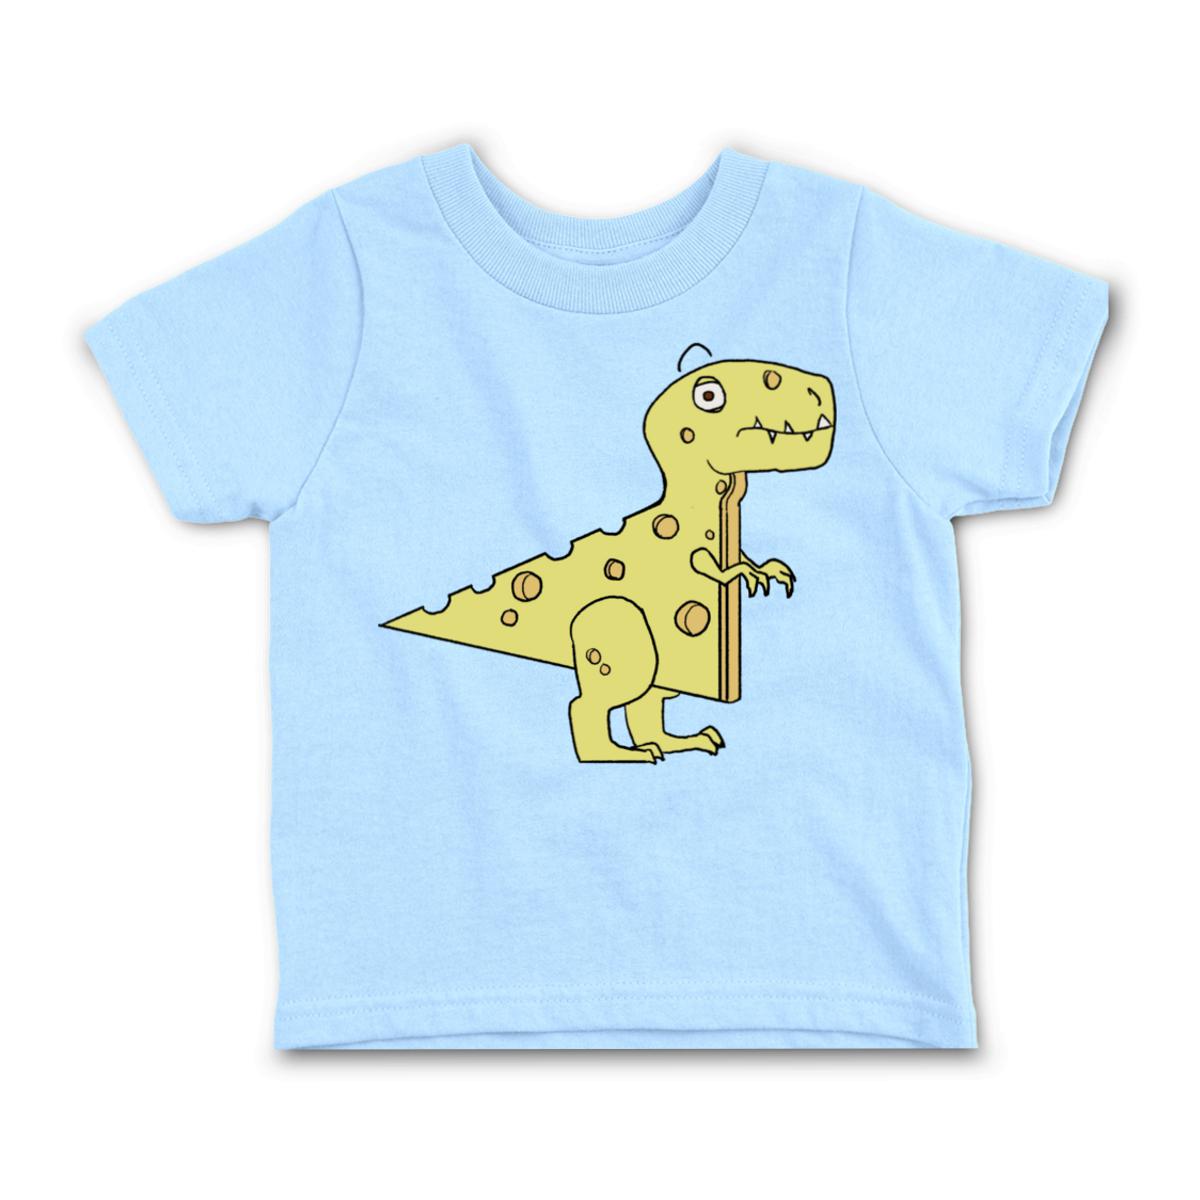 Cheeseosaurus Rex Toddler Tee 56T light-blue